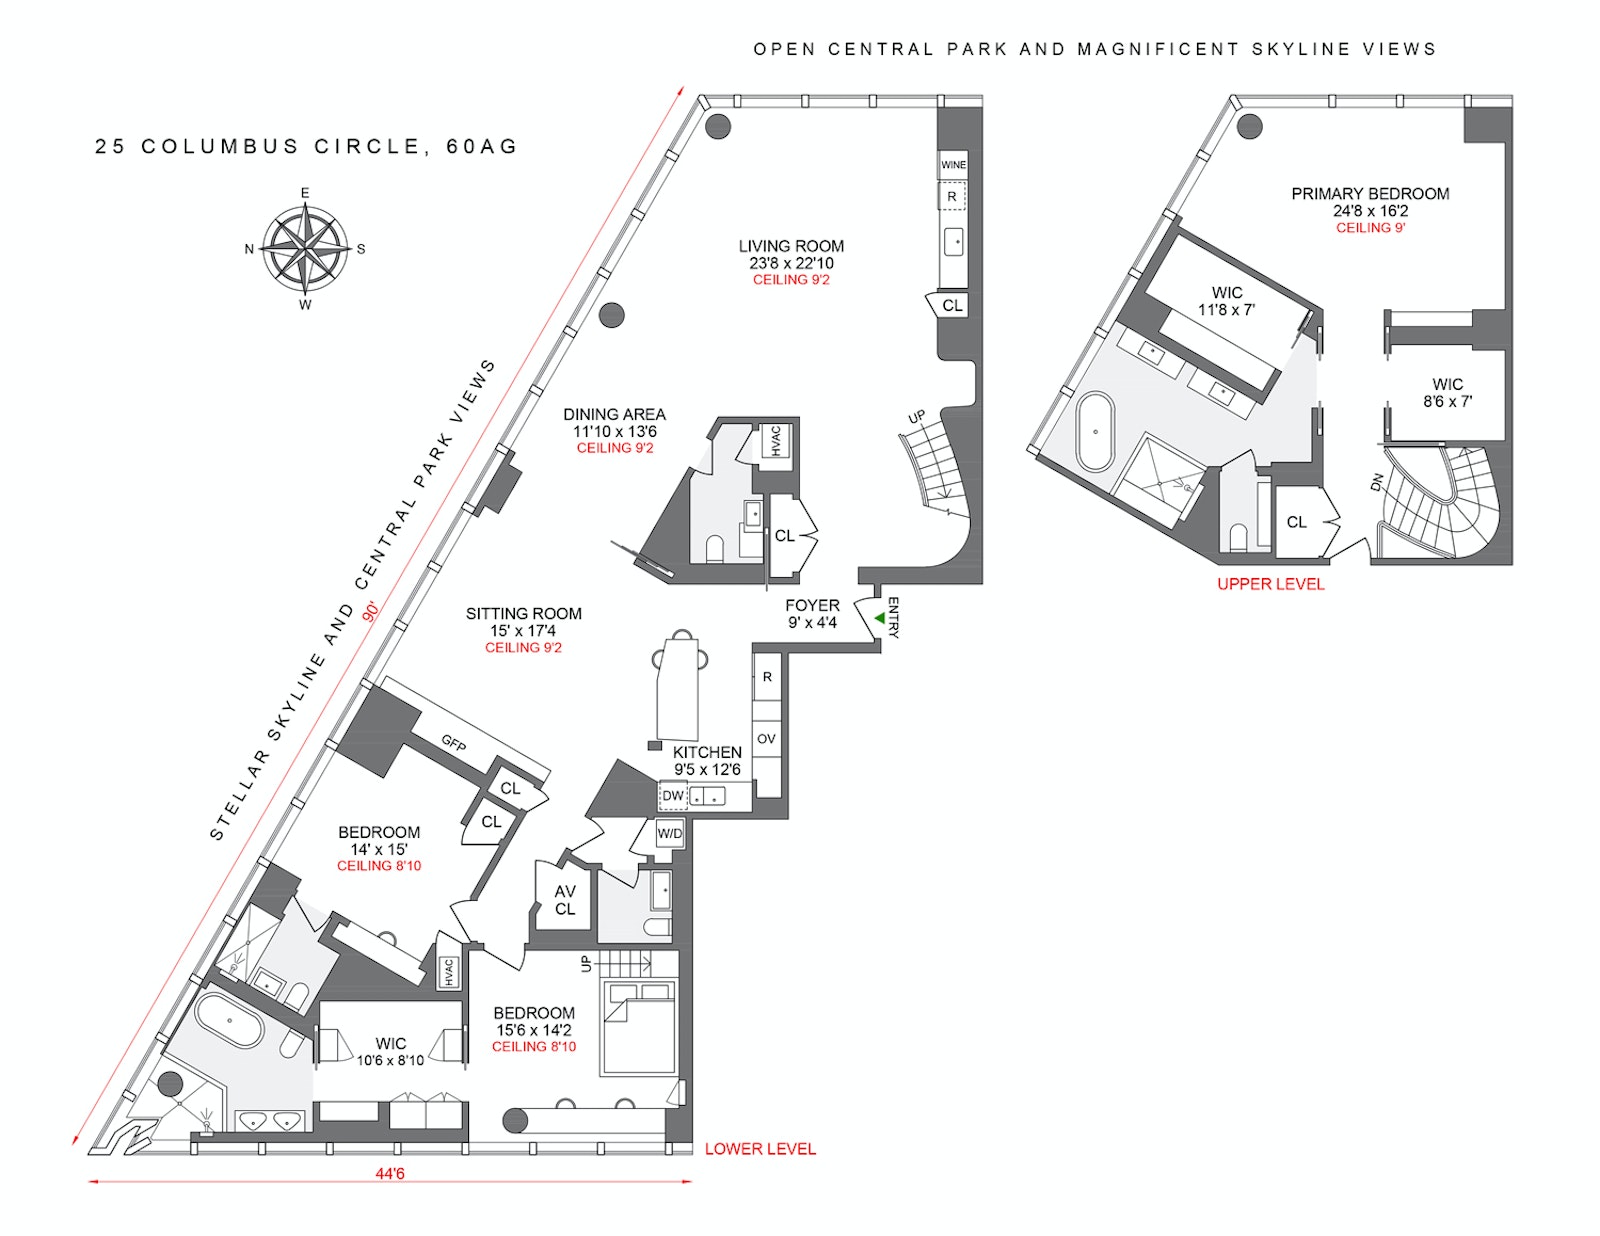 Floorplan for 25 Columbus Circle, 60AG